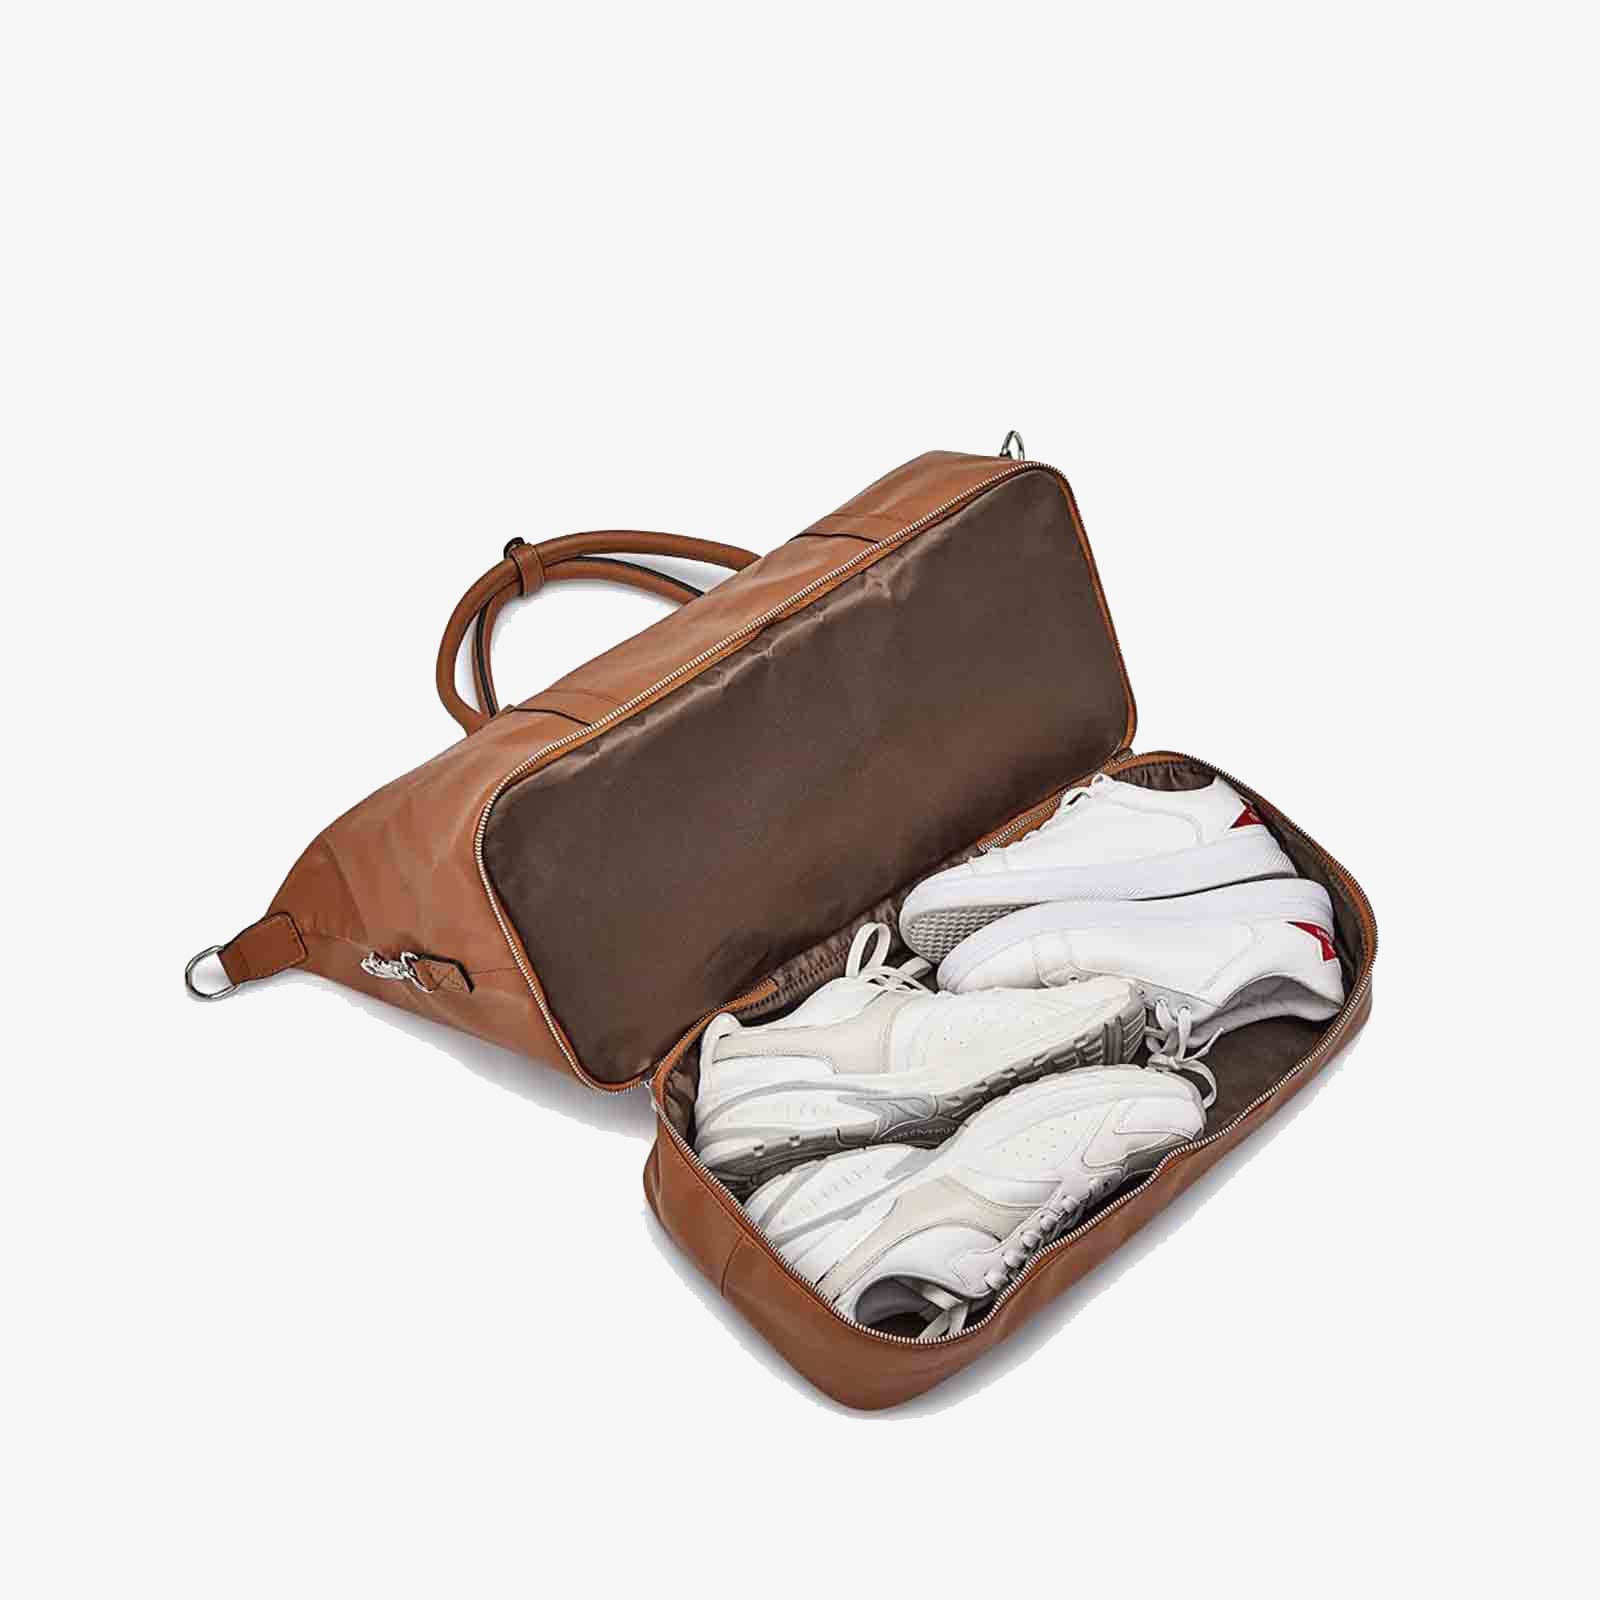 30L Women Classical Traveling Carryon Weekend Duffel Bag